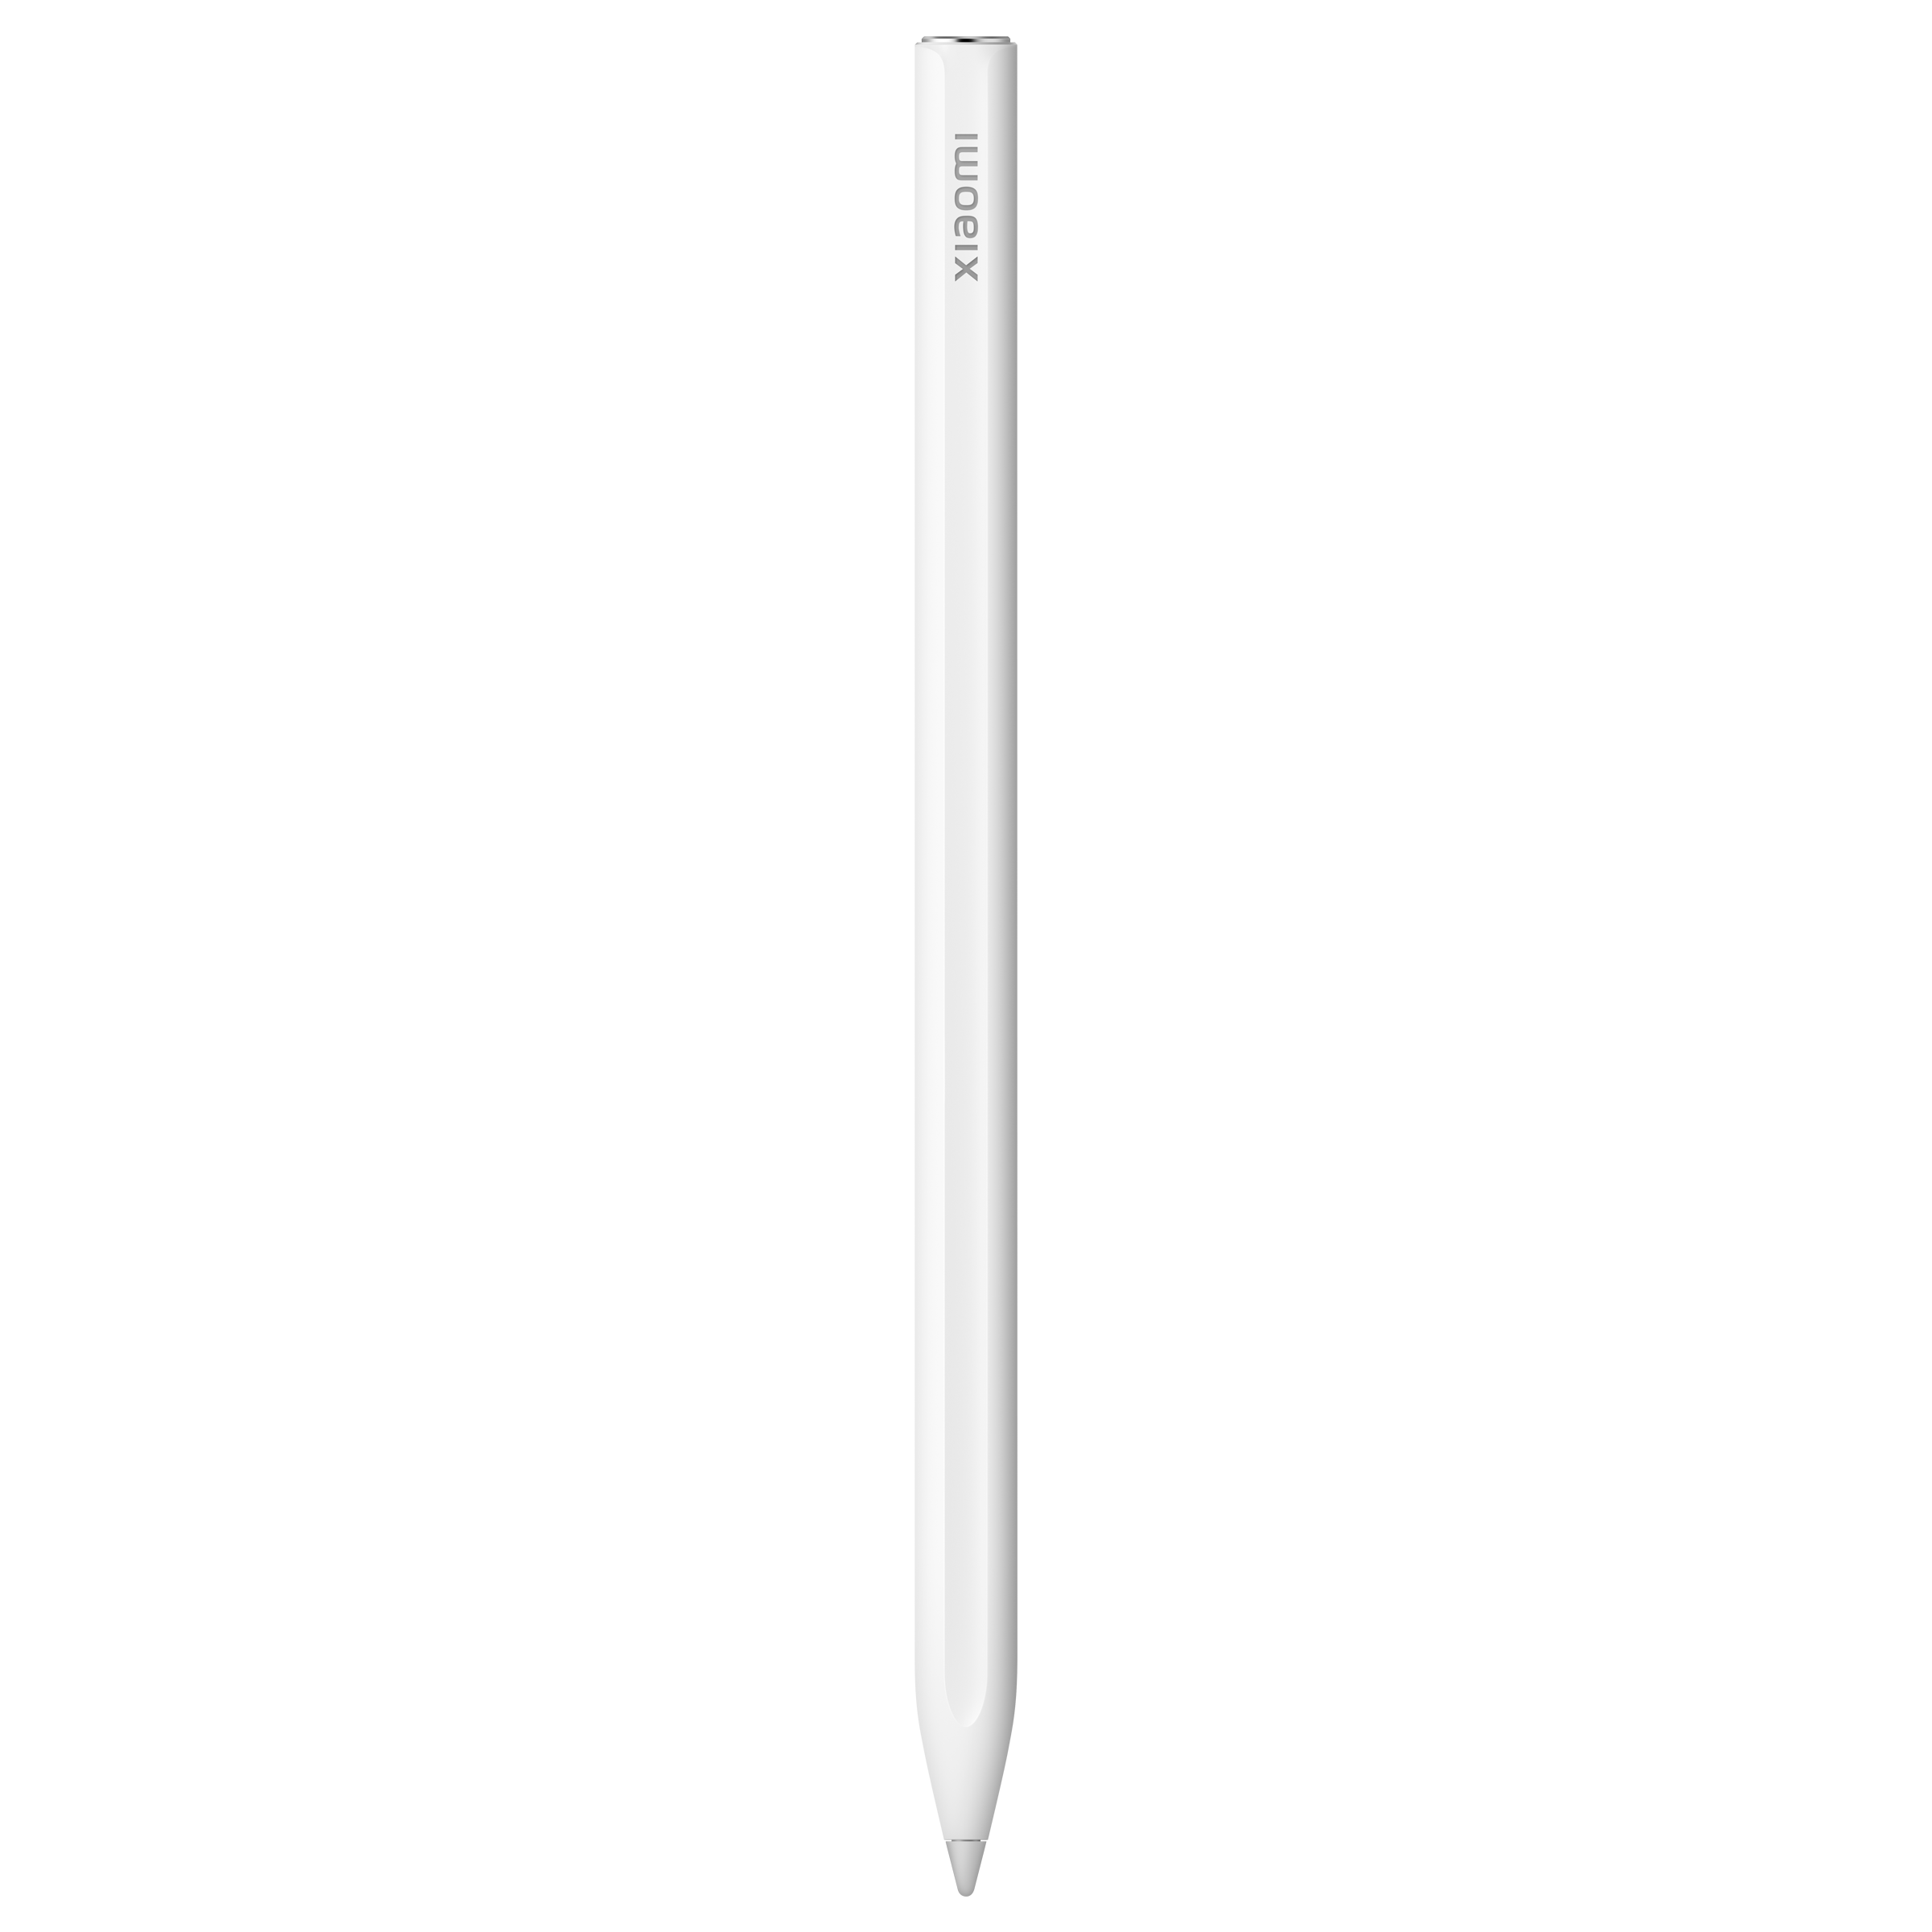 Xiaomi Stylus Pen 2 per Xiaomi Pad 6 Tablet Xiaomi Smart Pen